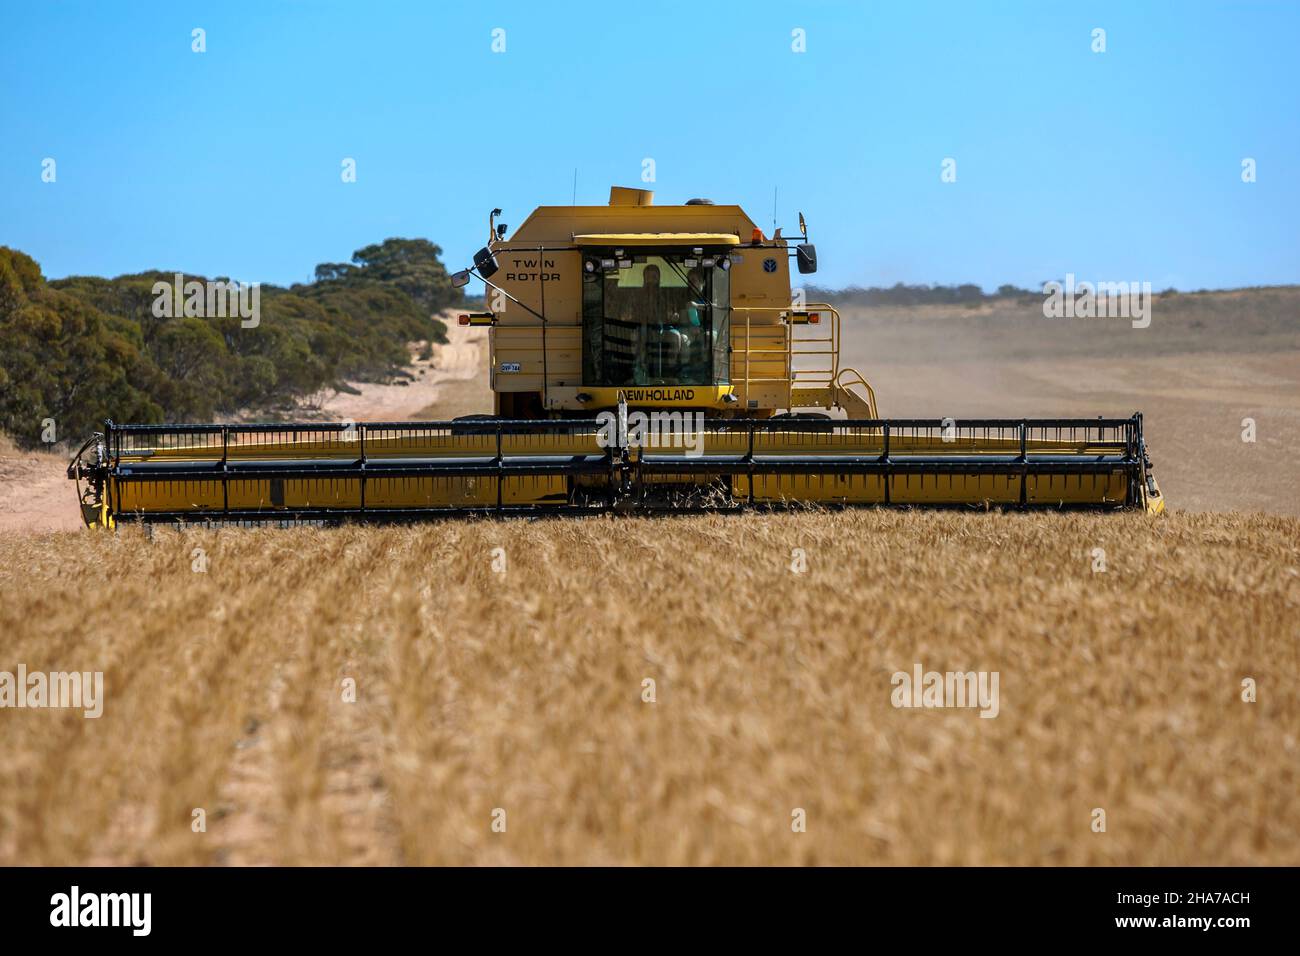 Un agriculteur qui conduit une moissonneuse-batteuse récolte une récolte de blé sur une propriété de large hectare à Kringin, dans la région de Murray Mallee, en Australie méridionale. Banque D'Images